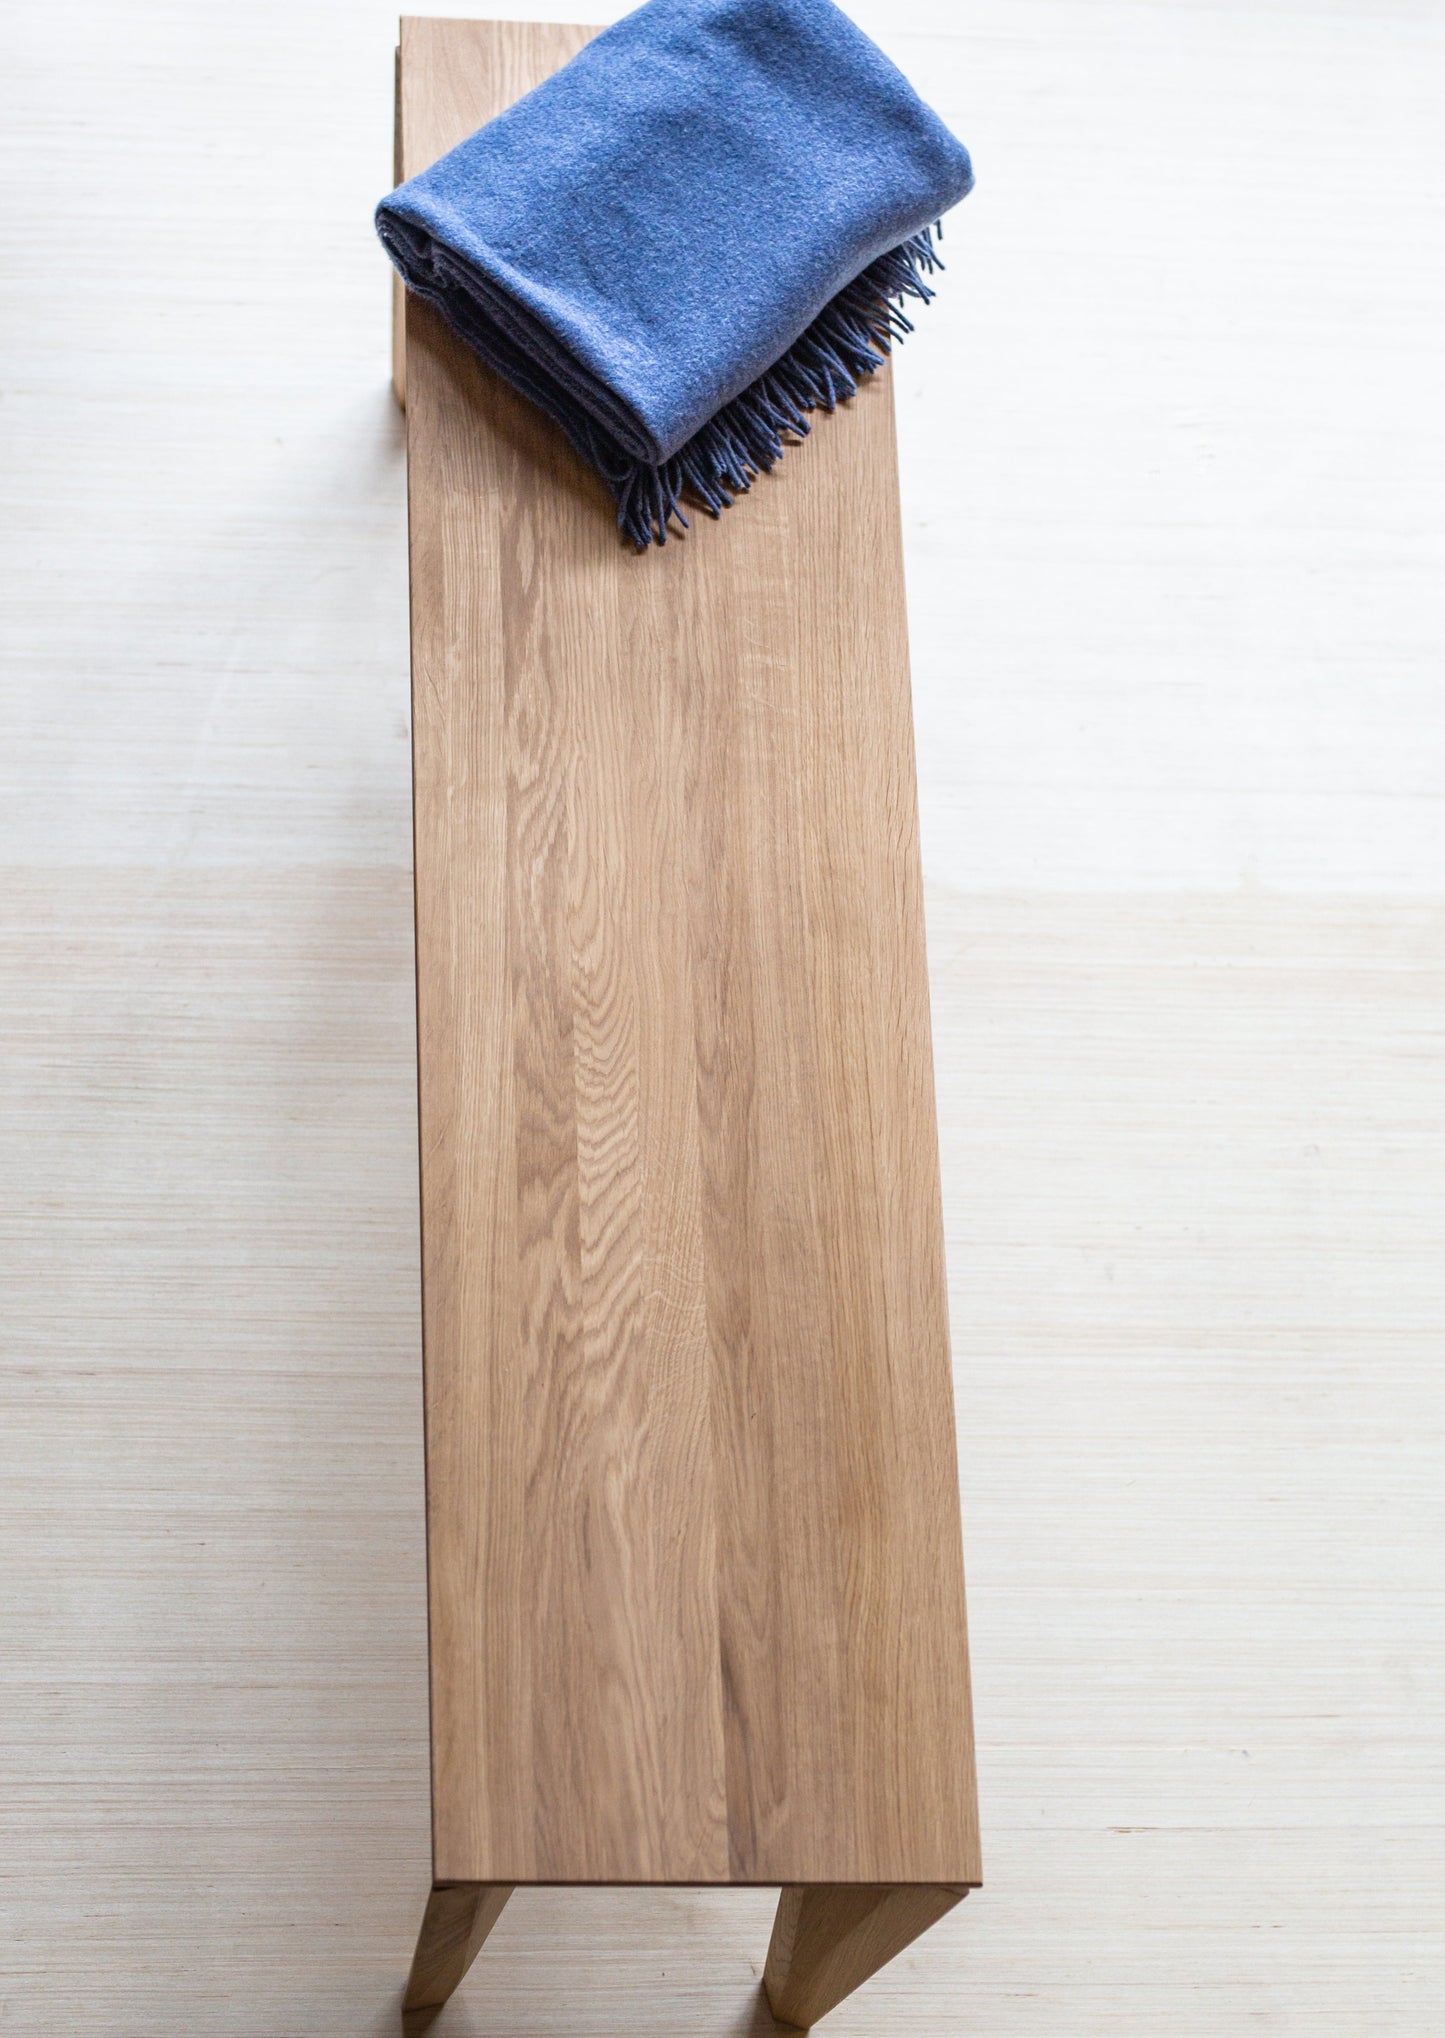 Sittebenken Kasu er laget av høyeste kvalitet lys eik. Denne sittebenken har elegante og moderne former, med unike bein.